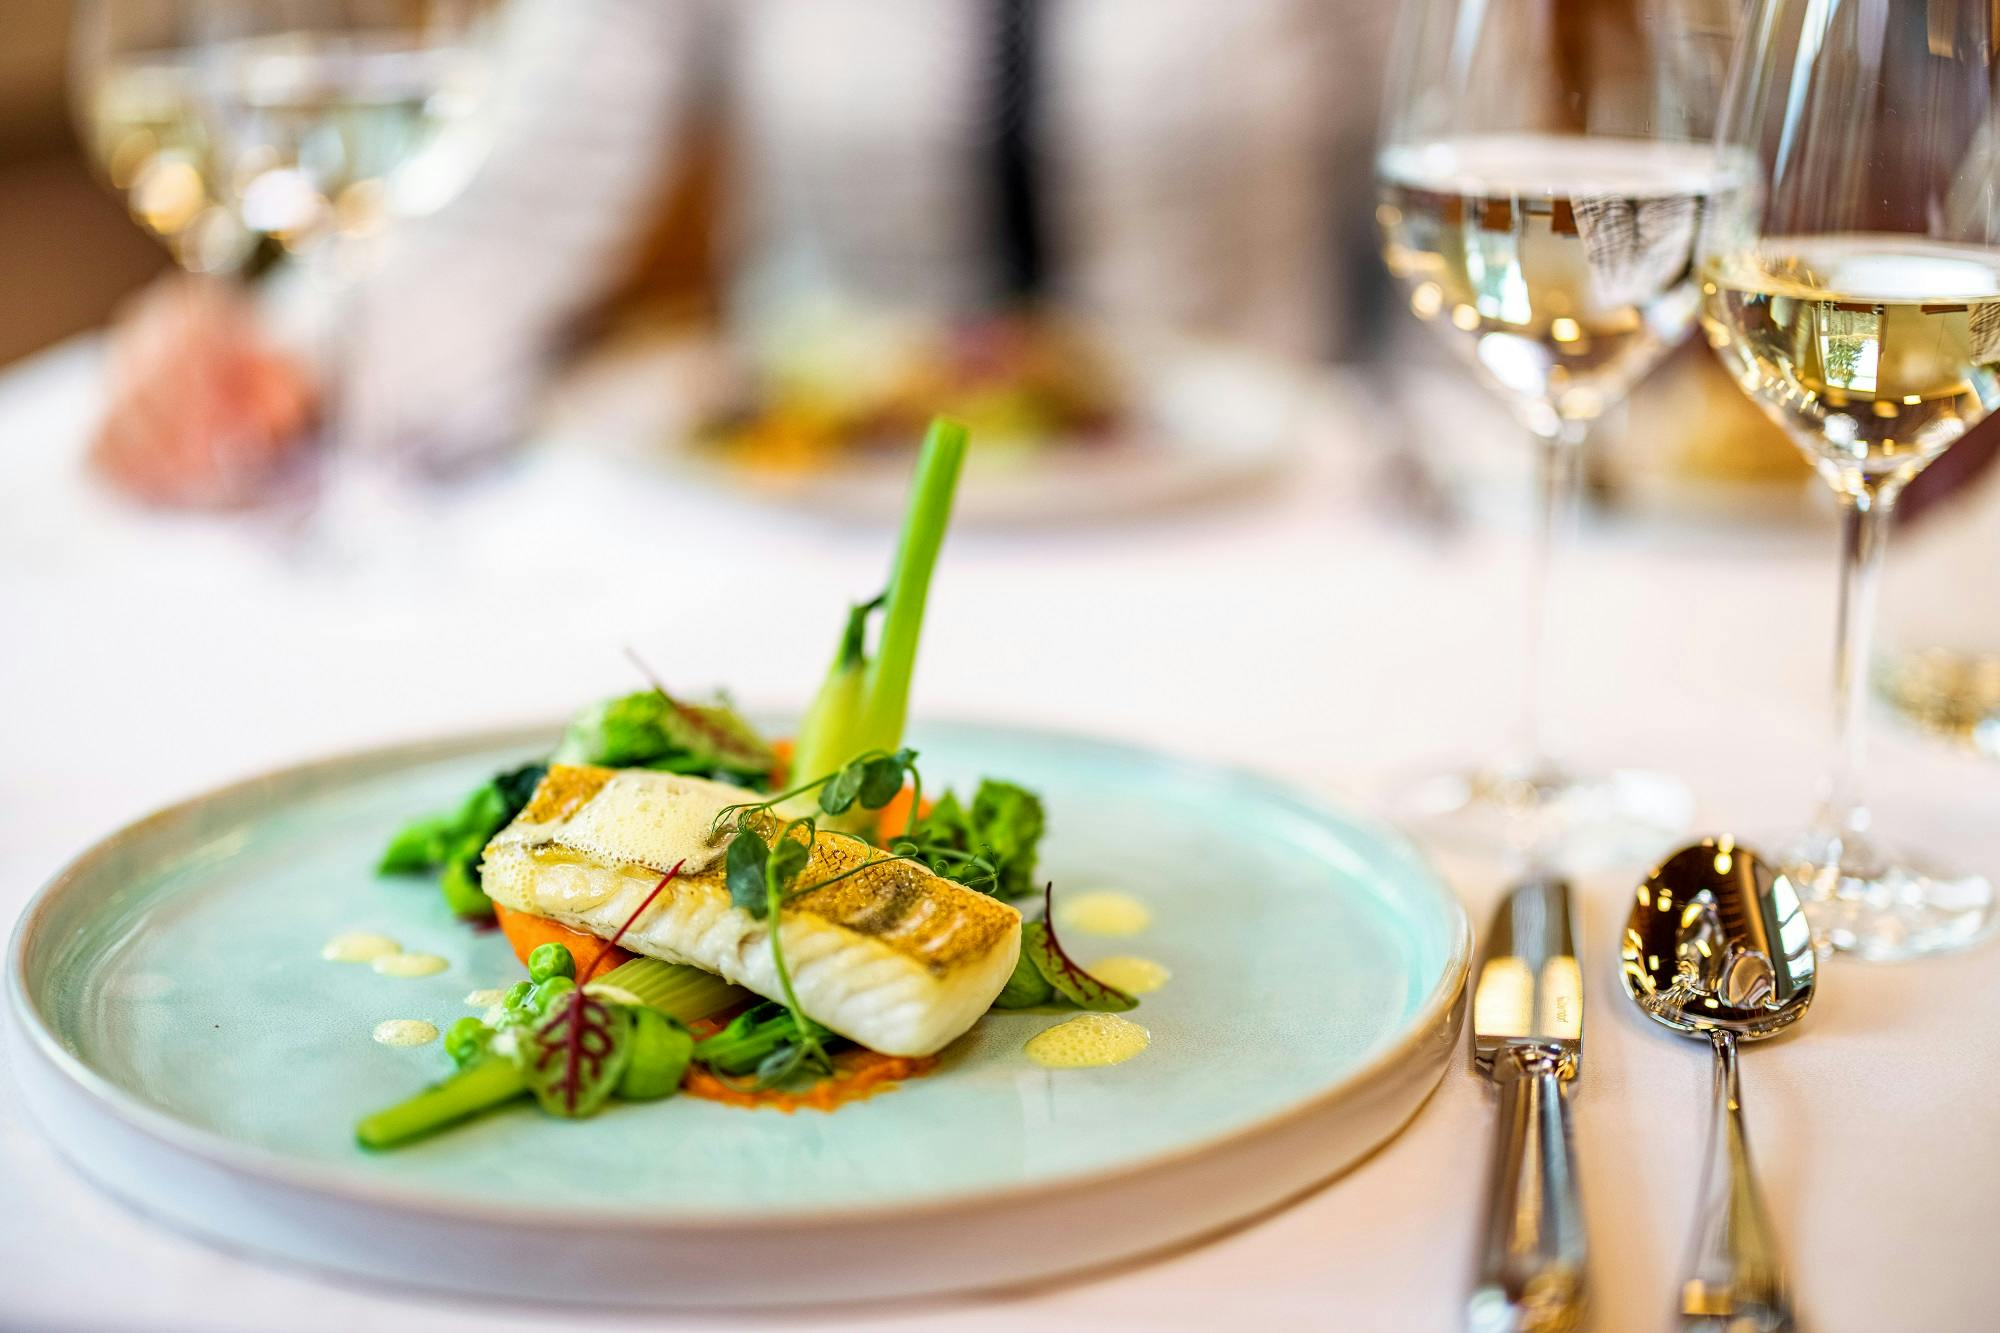 Elegantes Gourmet-Essen mit Fischfilet und frischem Gemüse auf einem Teller, begleitet von einem Glas Weißwein.